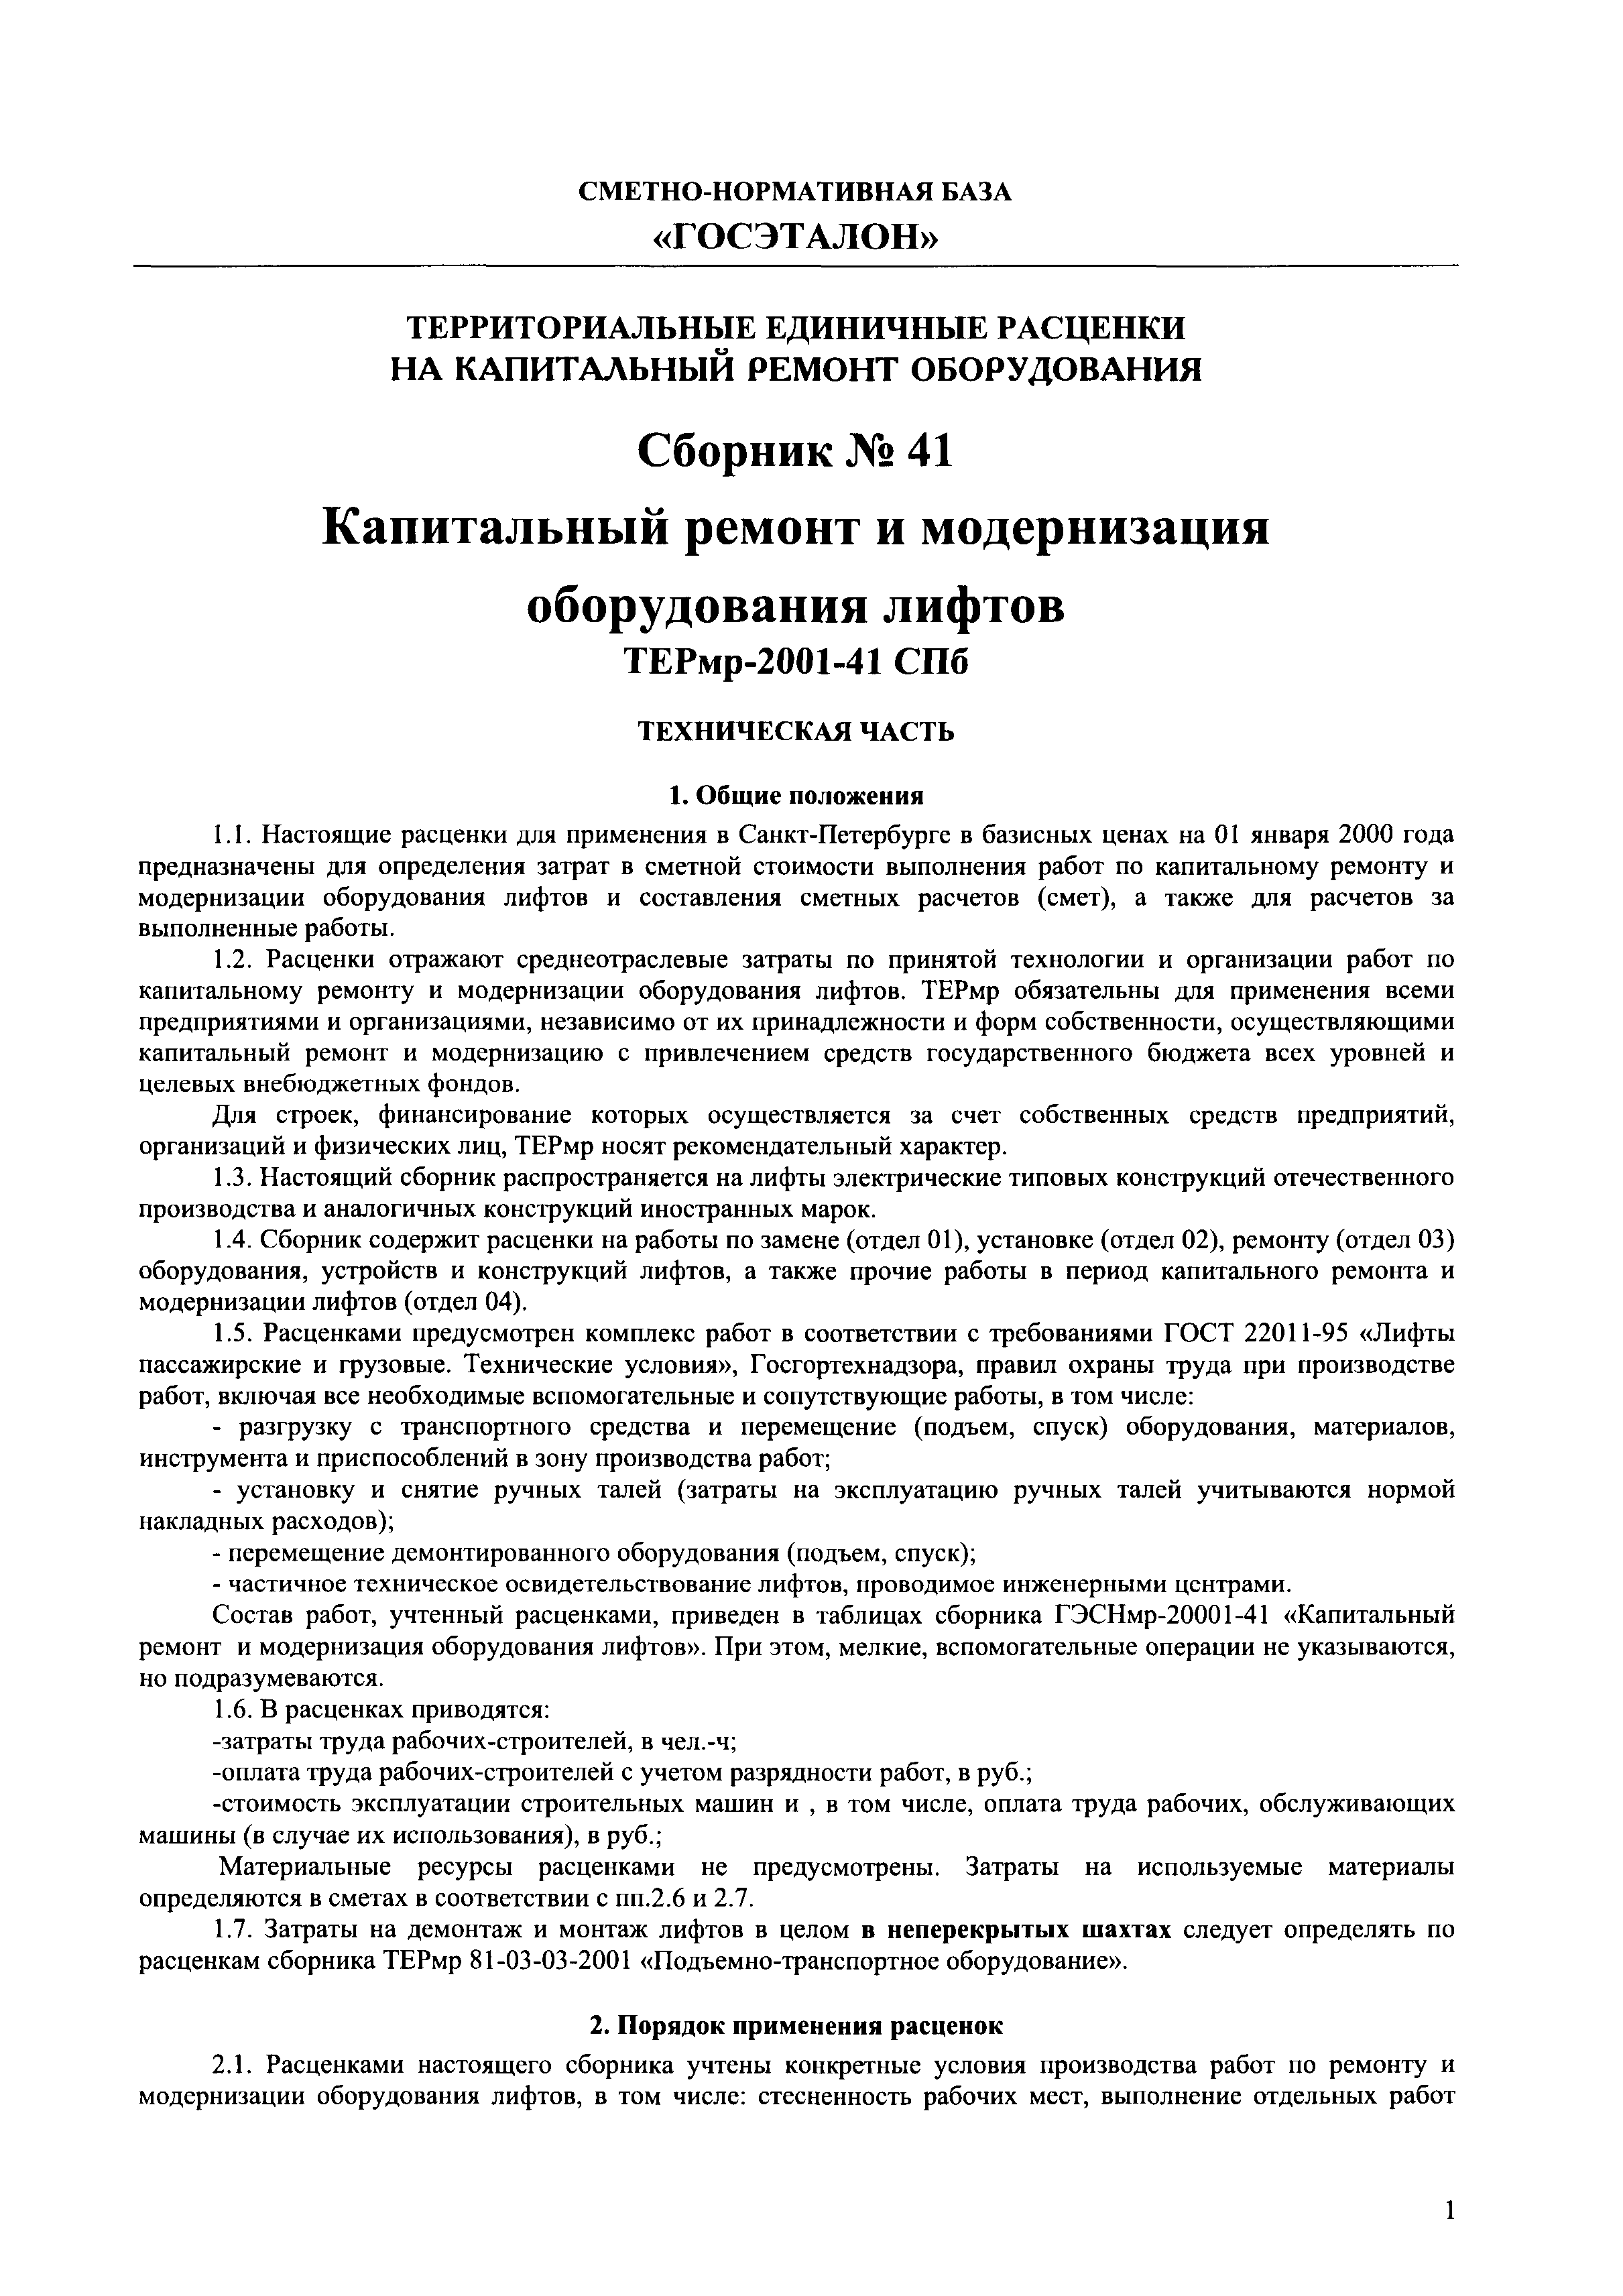 ТЕРм 2001-41 СПб